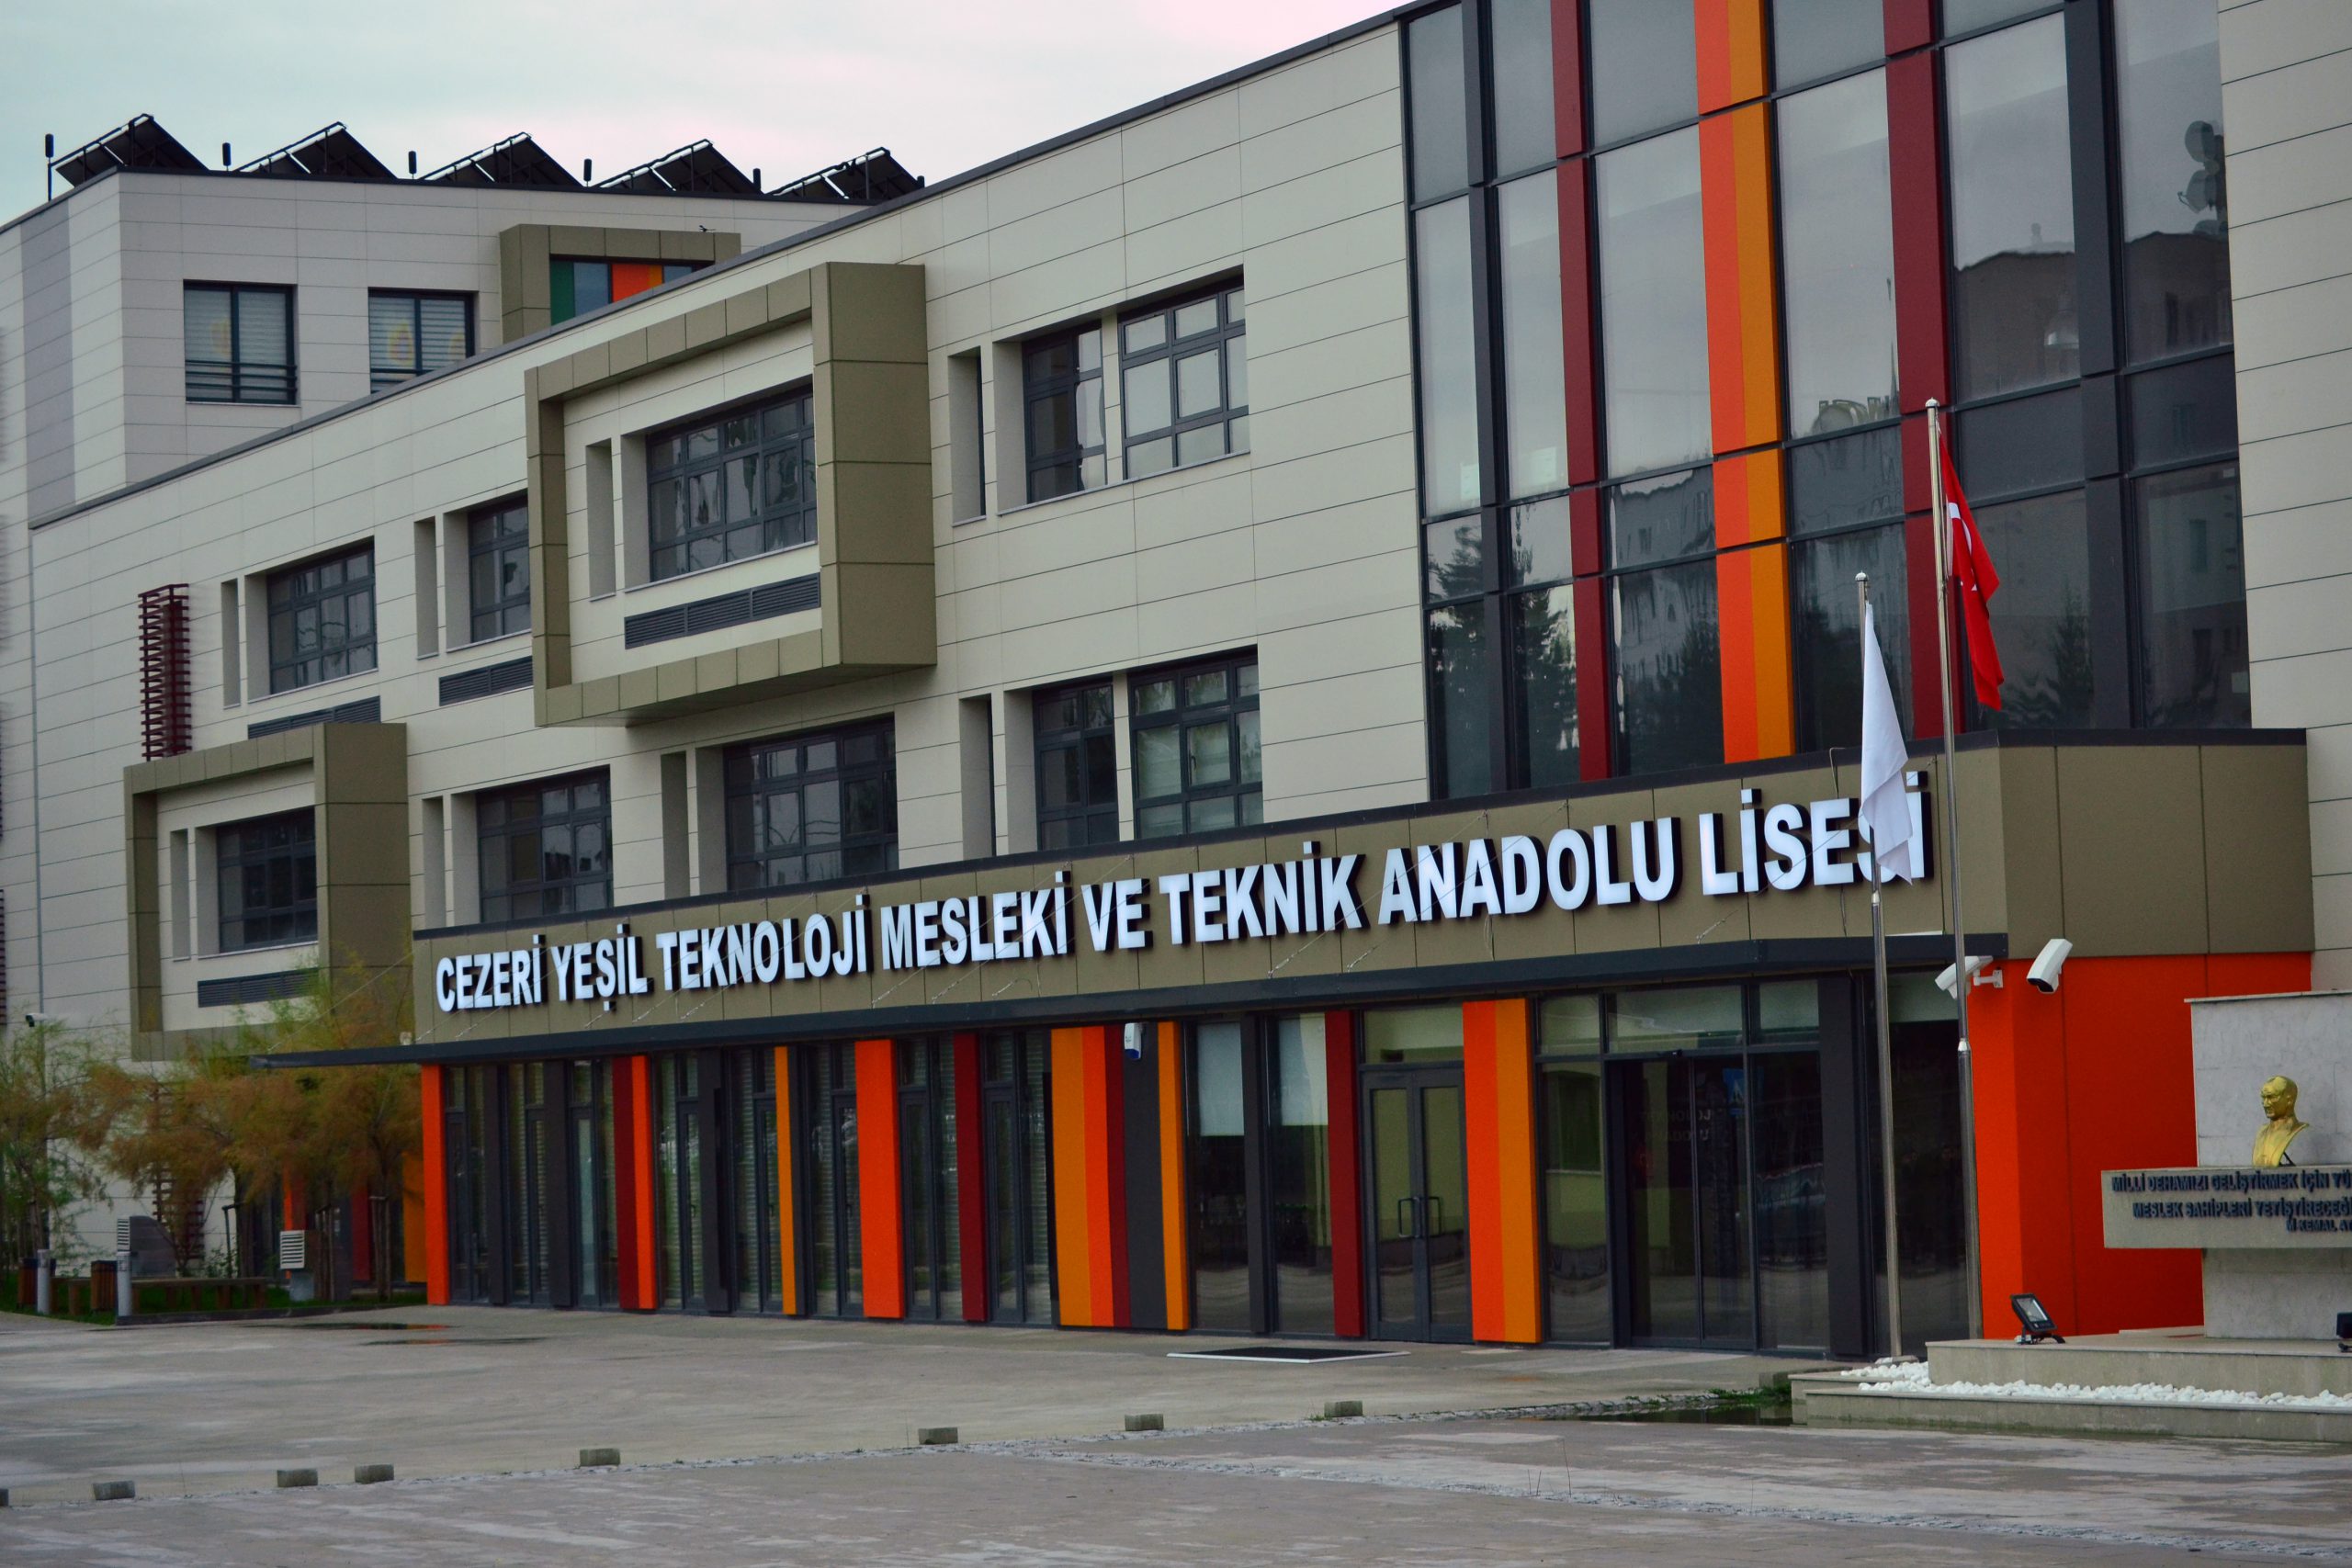 Cezeri Yeşil Teknoloji Mesleki ve Teknik Anadolu Lisesi